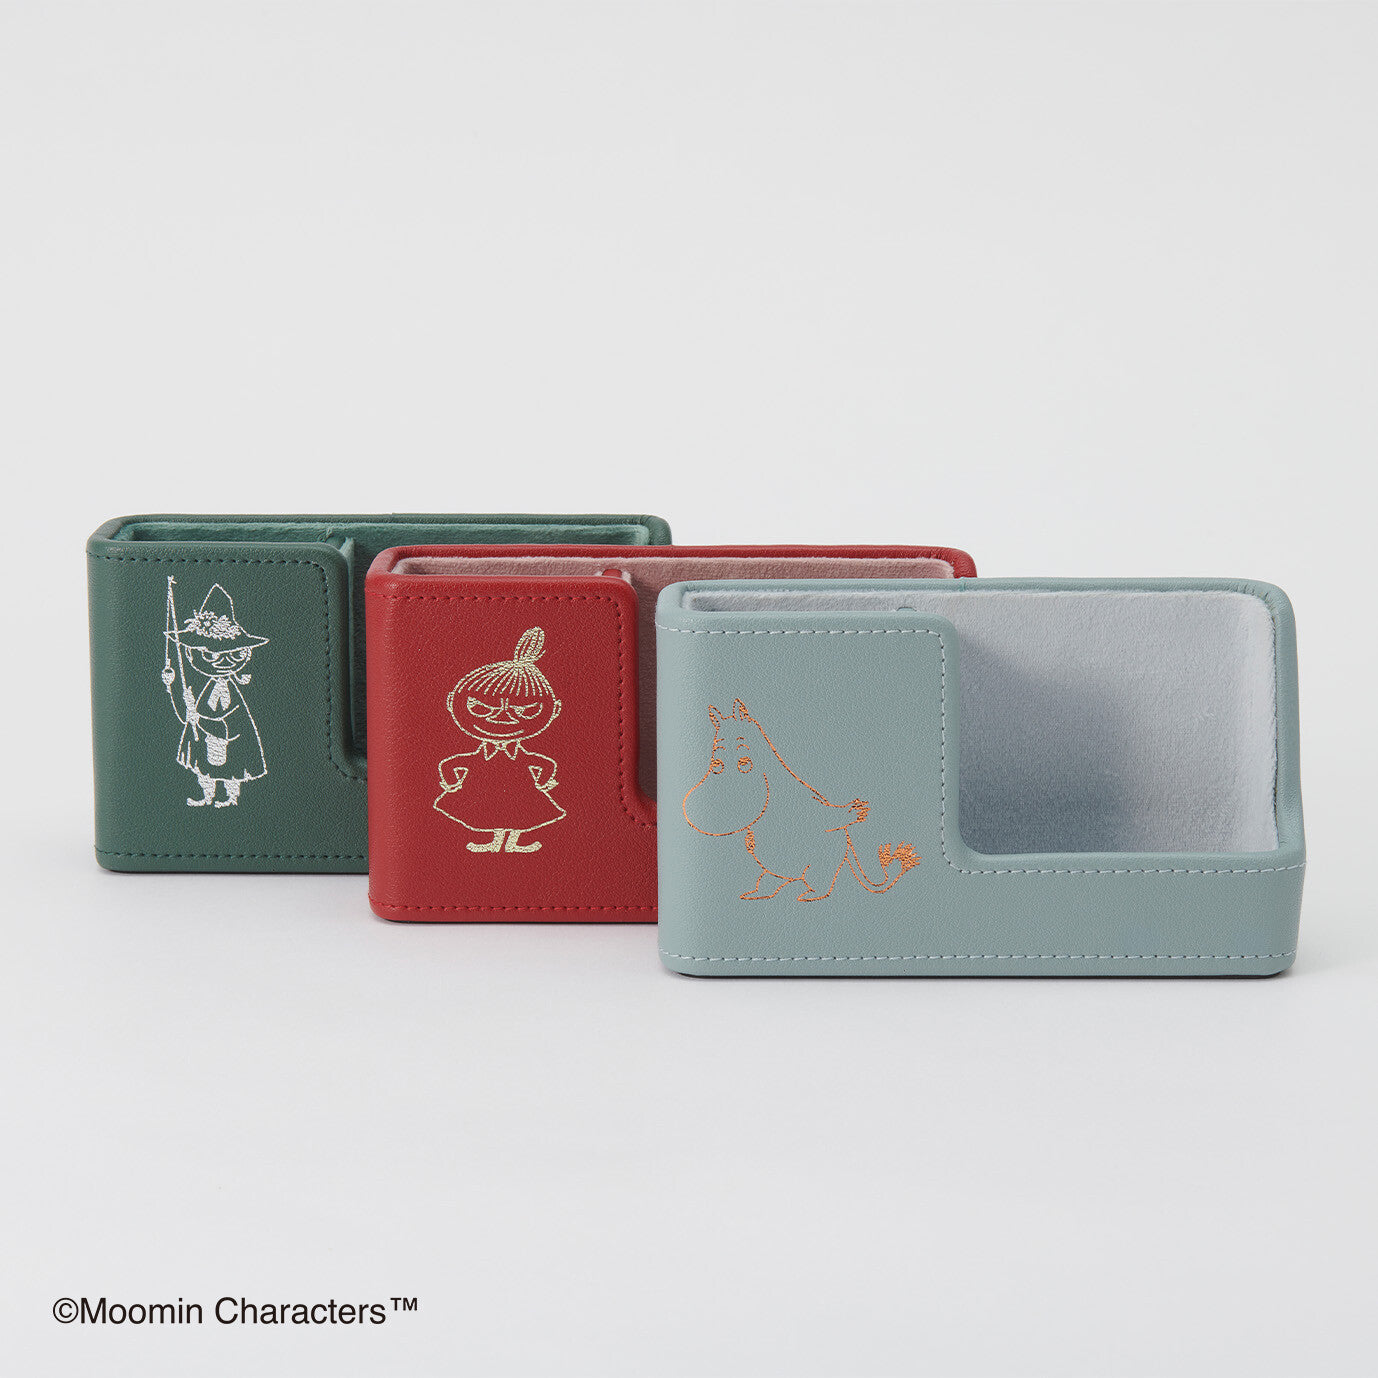  Moomin charactars Multipurpose Phone stand 